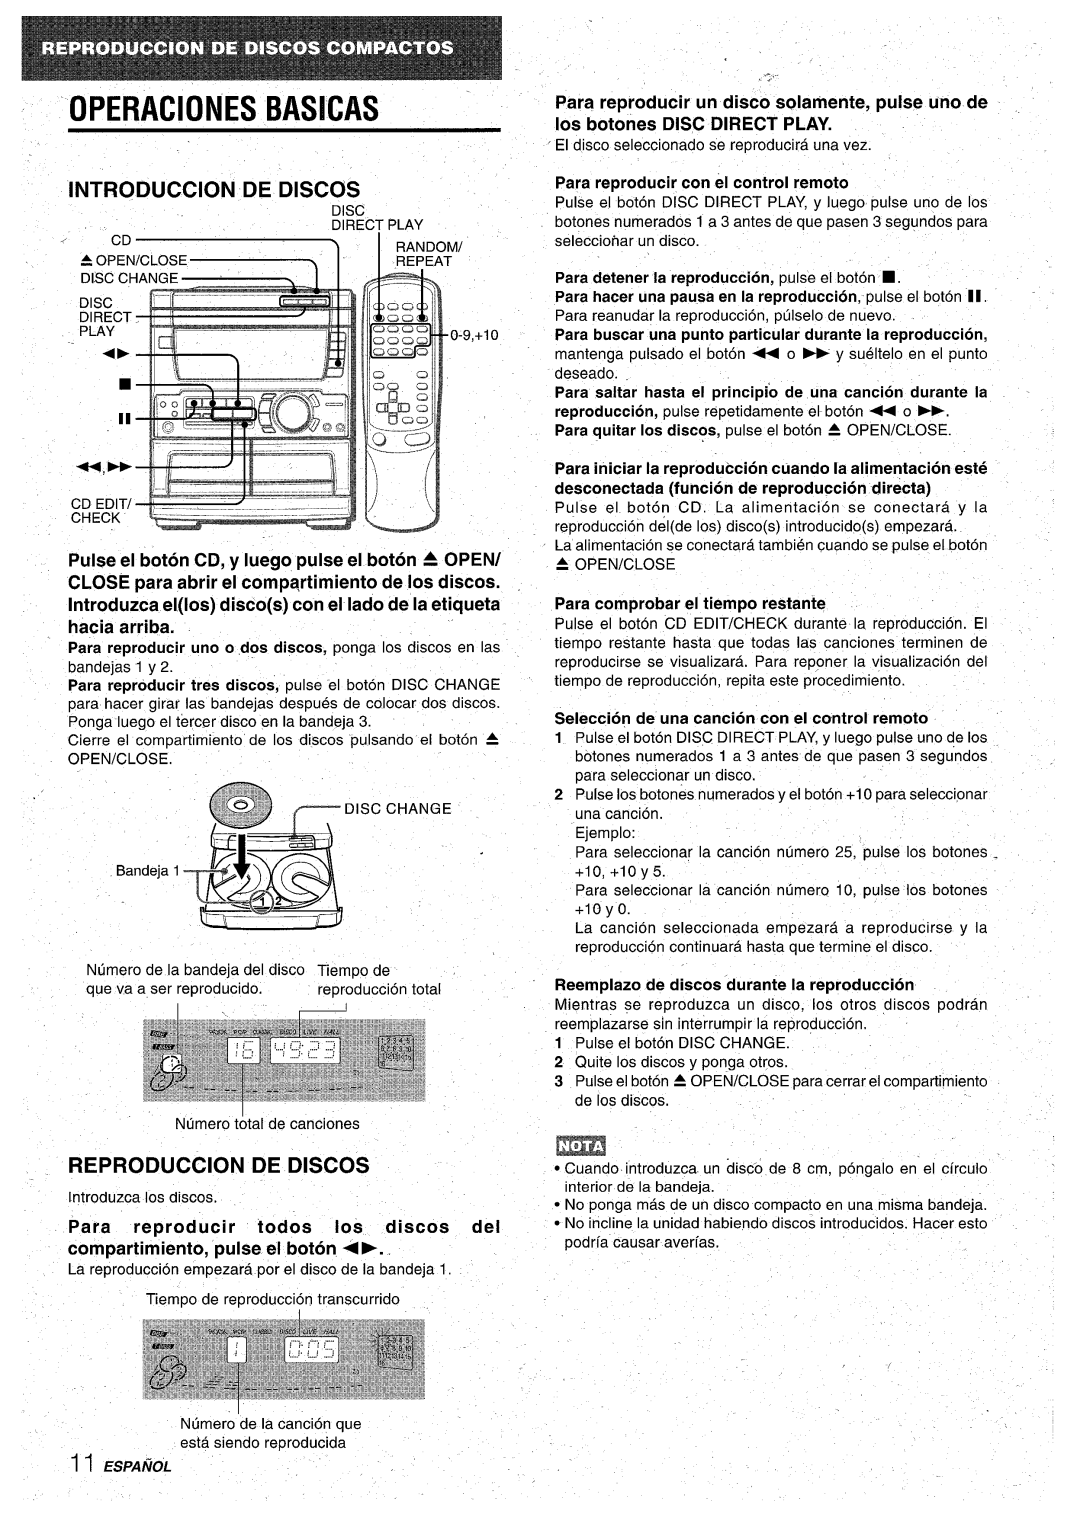 Aiwa CX-NA71 manual OPERAClONES BASICAS, Reproduction De Discos, Seleccion de una cancion con el control remoto 